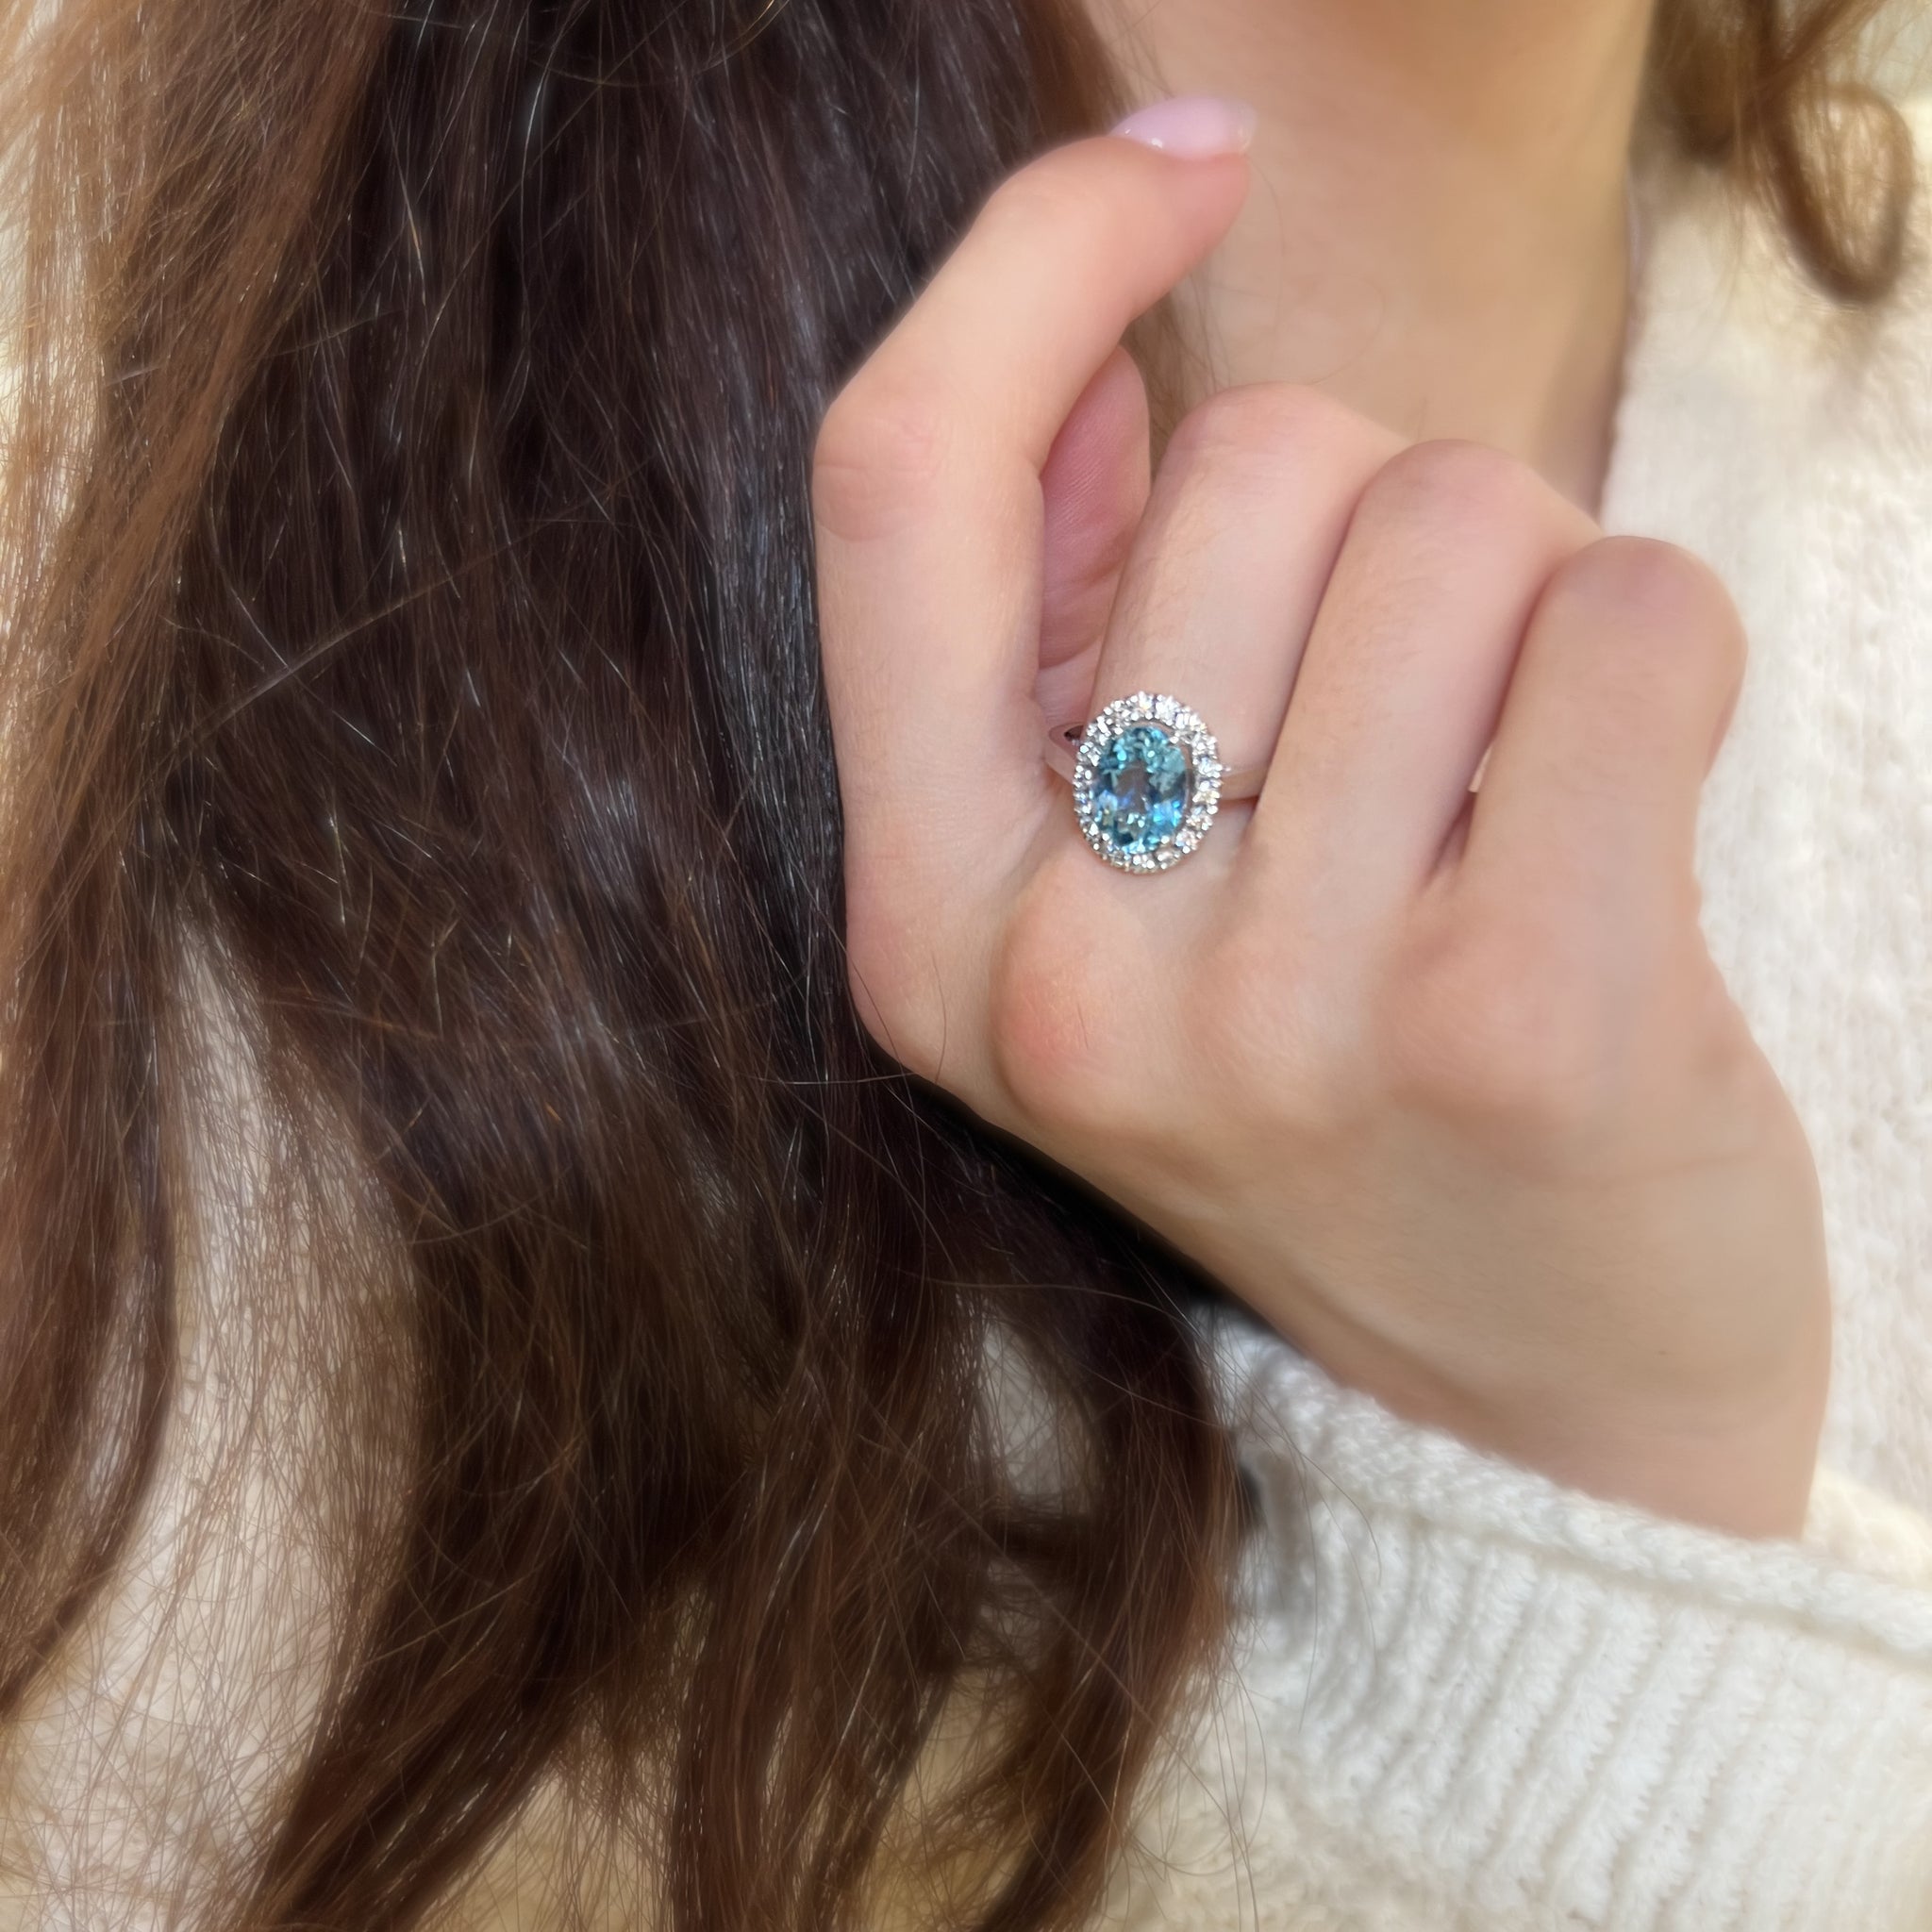 18ct White Gold 2.06ct Aquamarine and Diamond Halo Ring